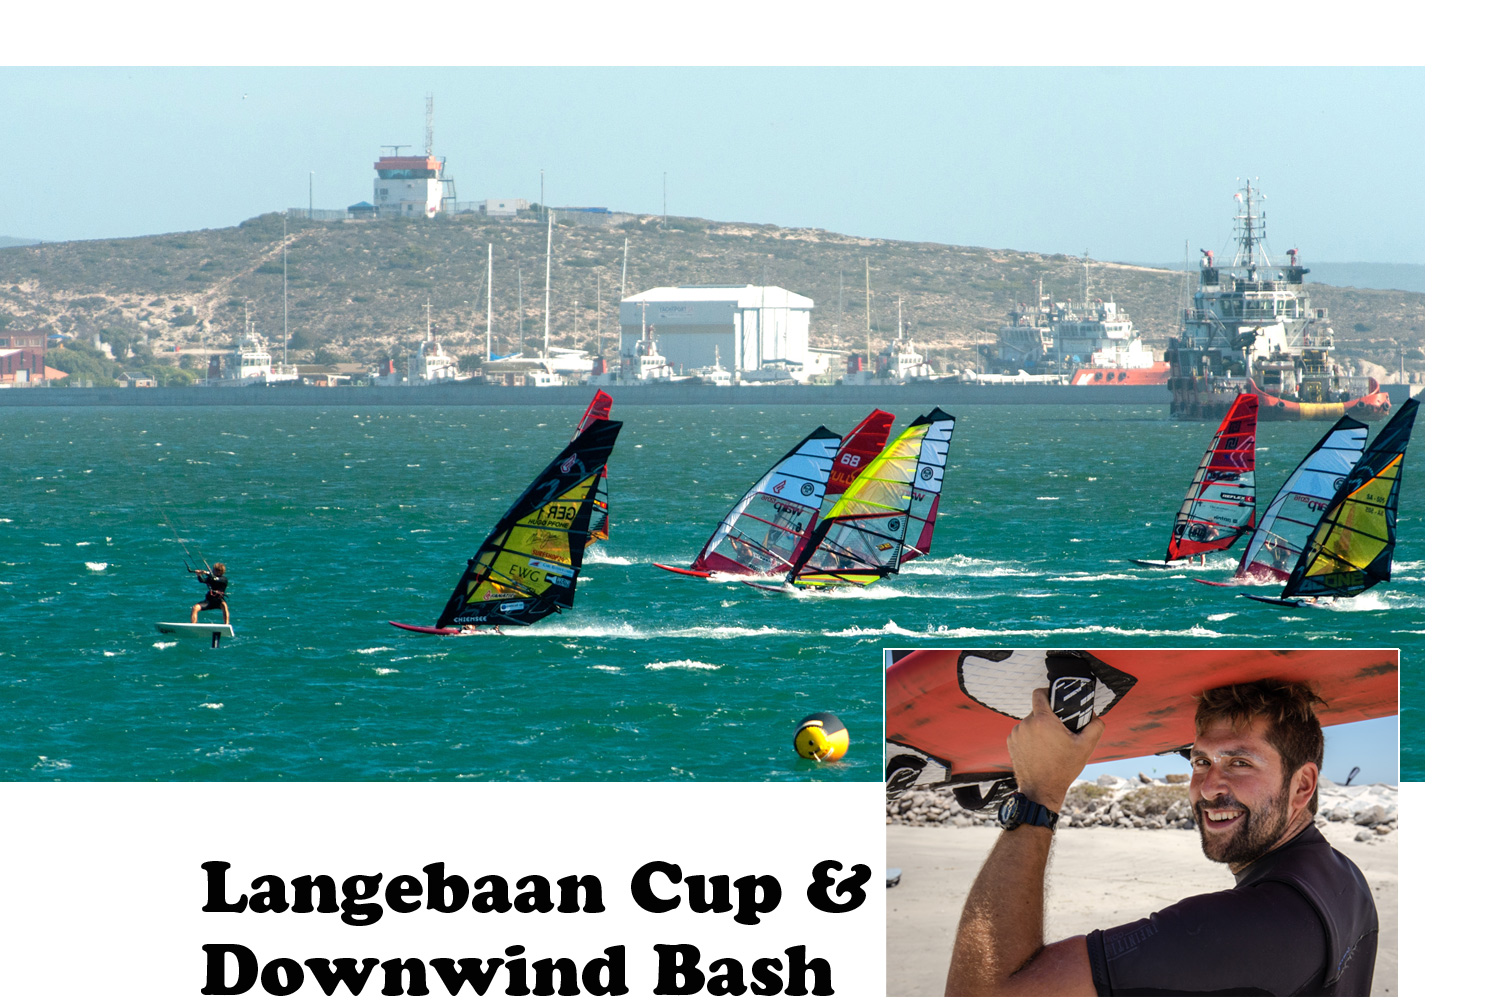 Langebaan Cup & Downwind Dash